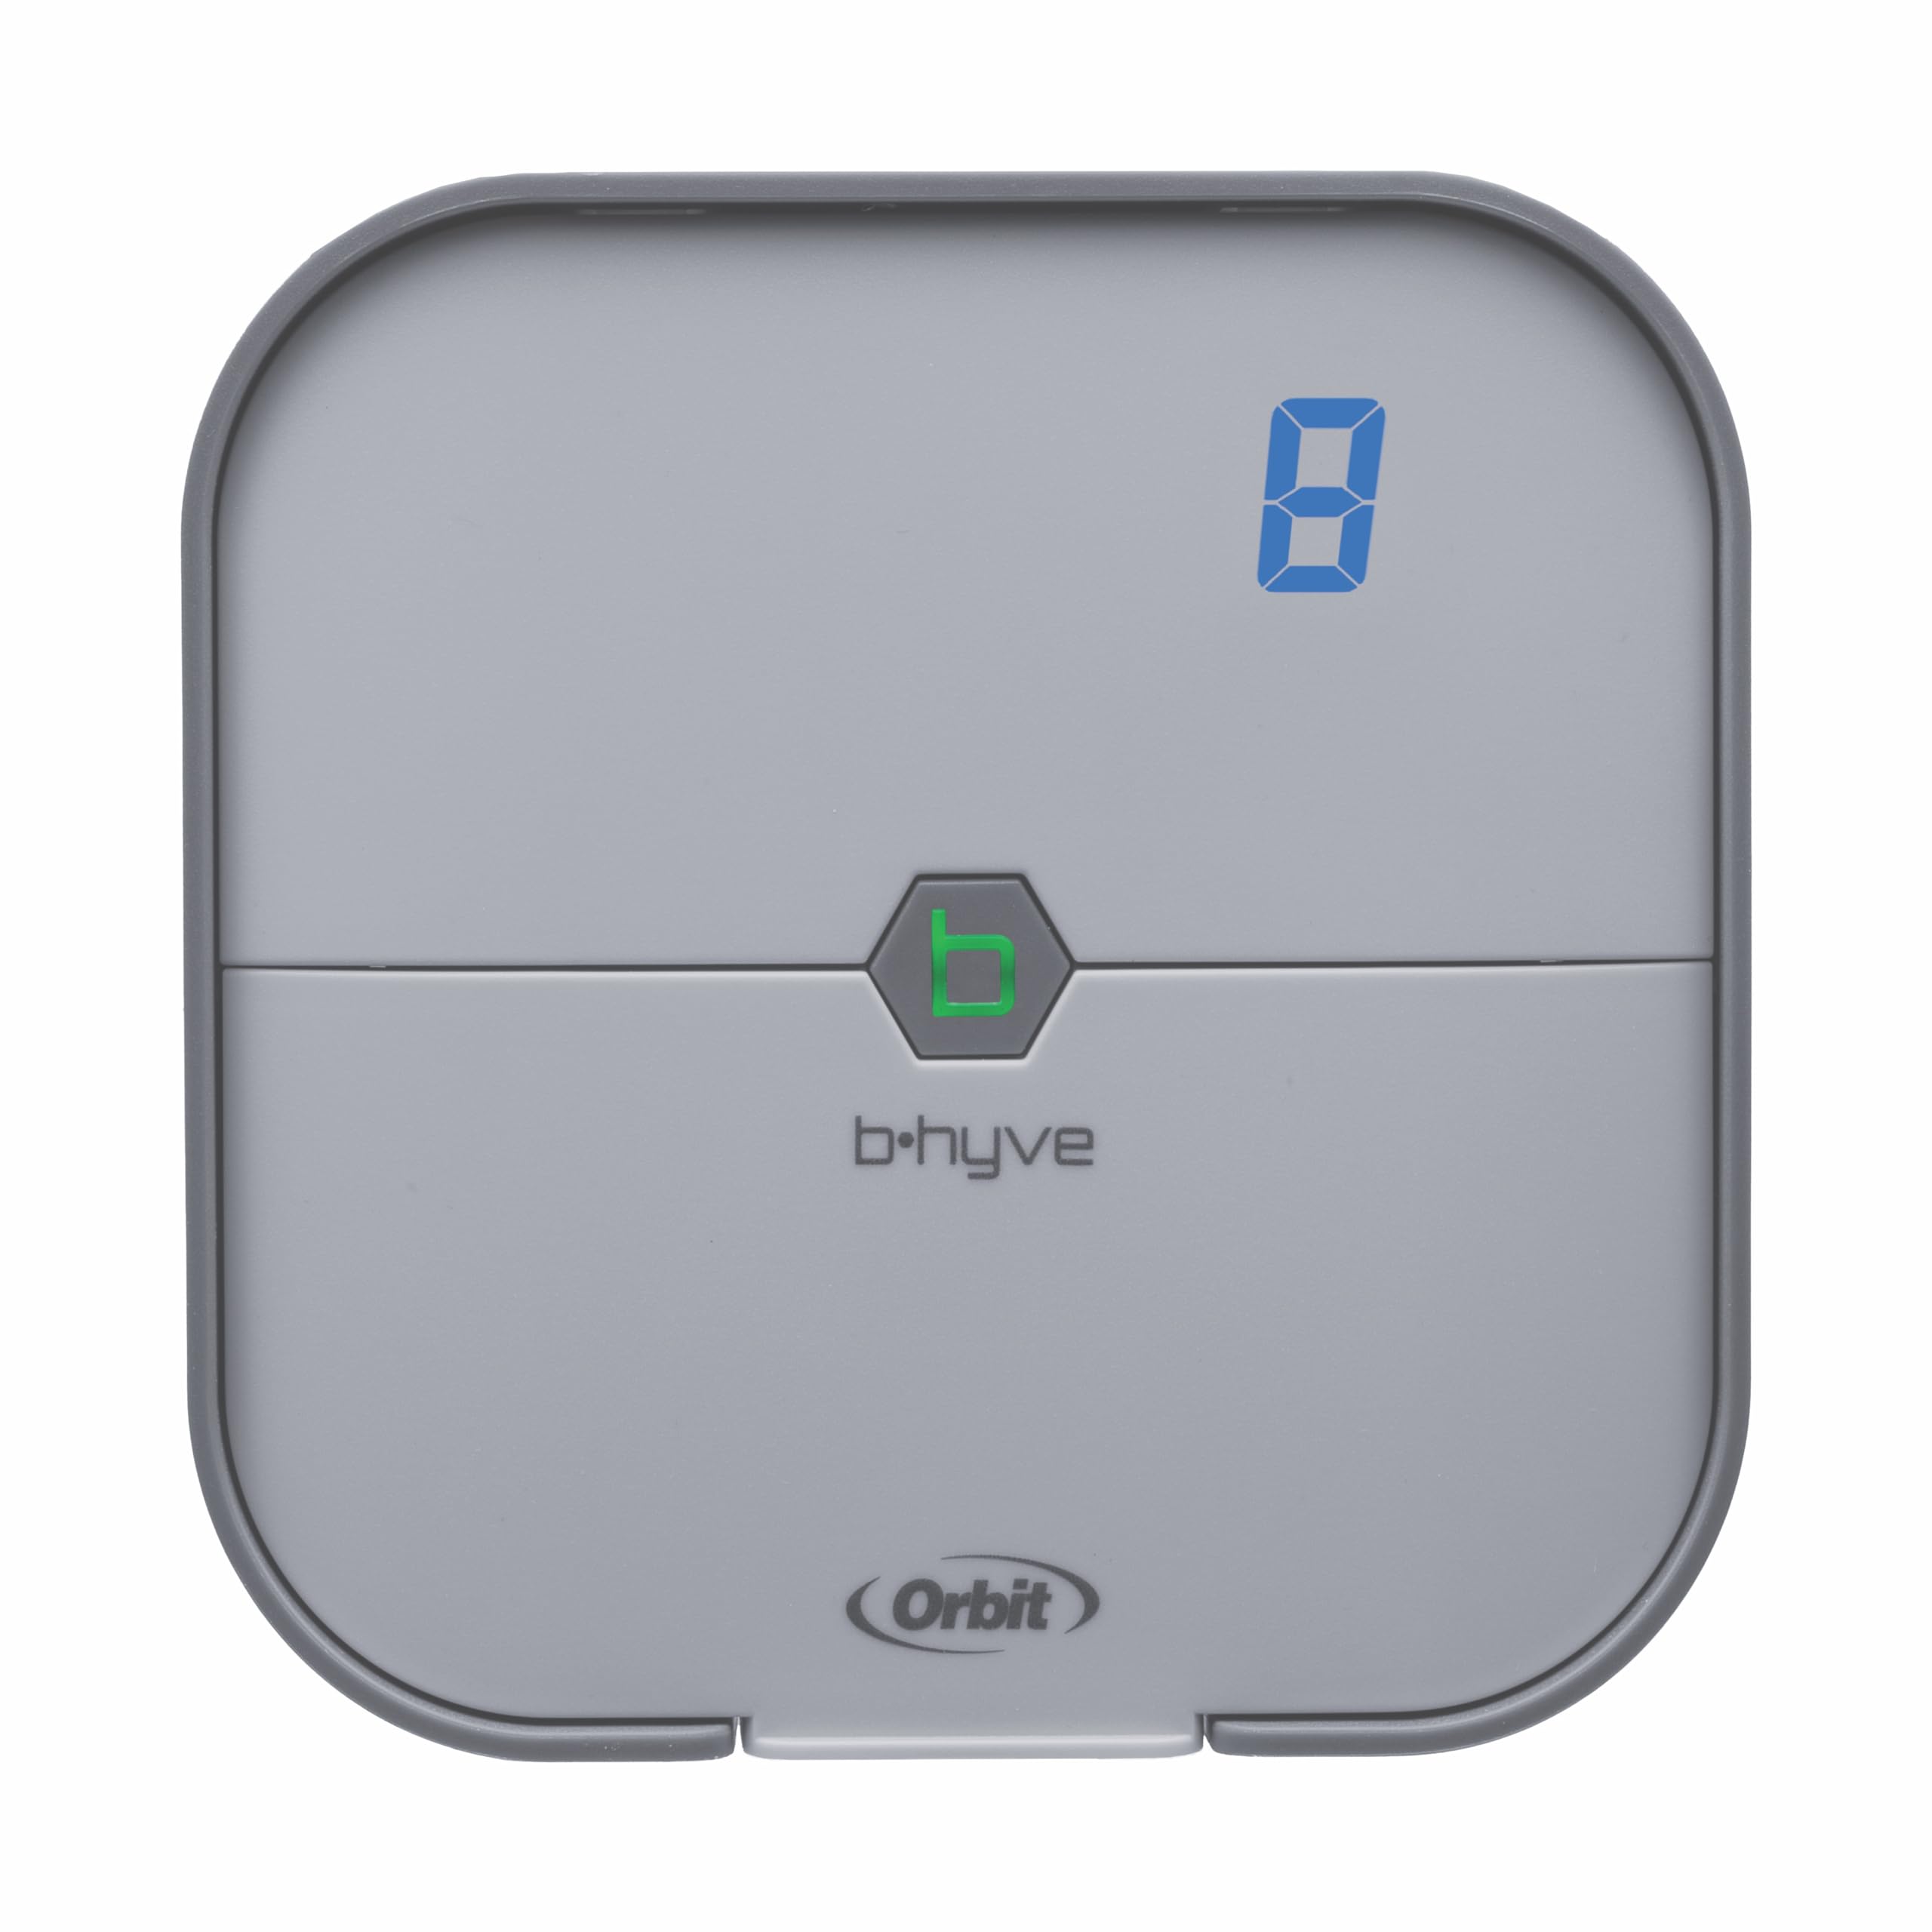 $57.81: Orbit B-hyve 8-Zone Indoor Mounted Smart WiFi Sprinkler Controller